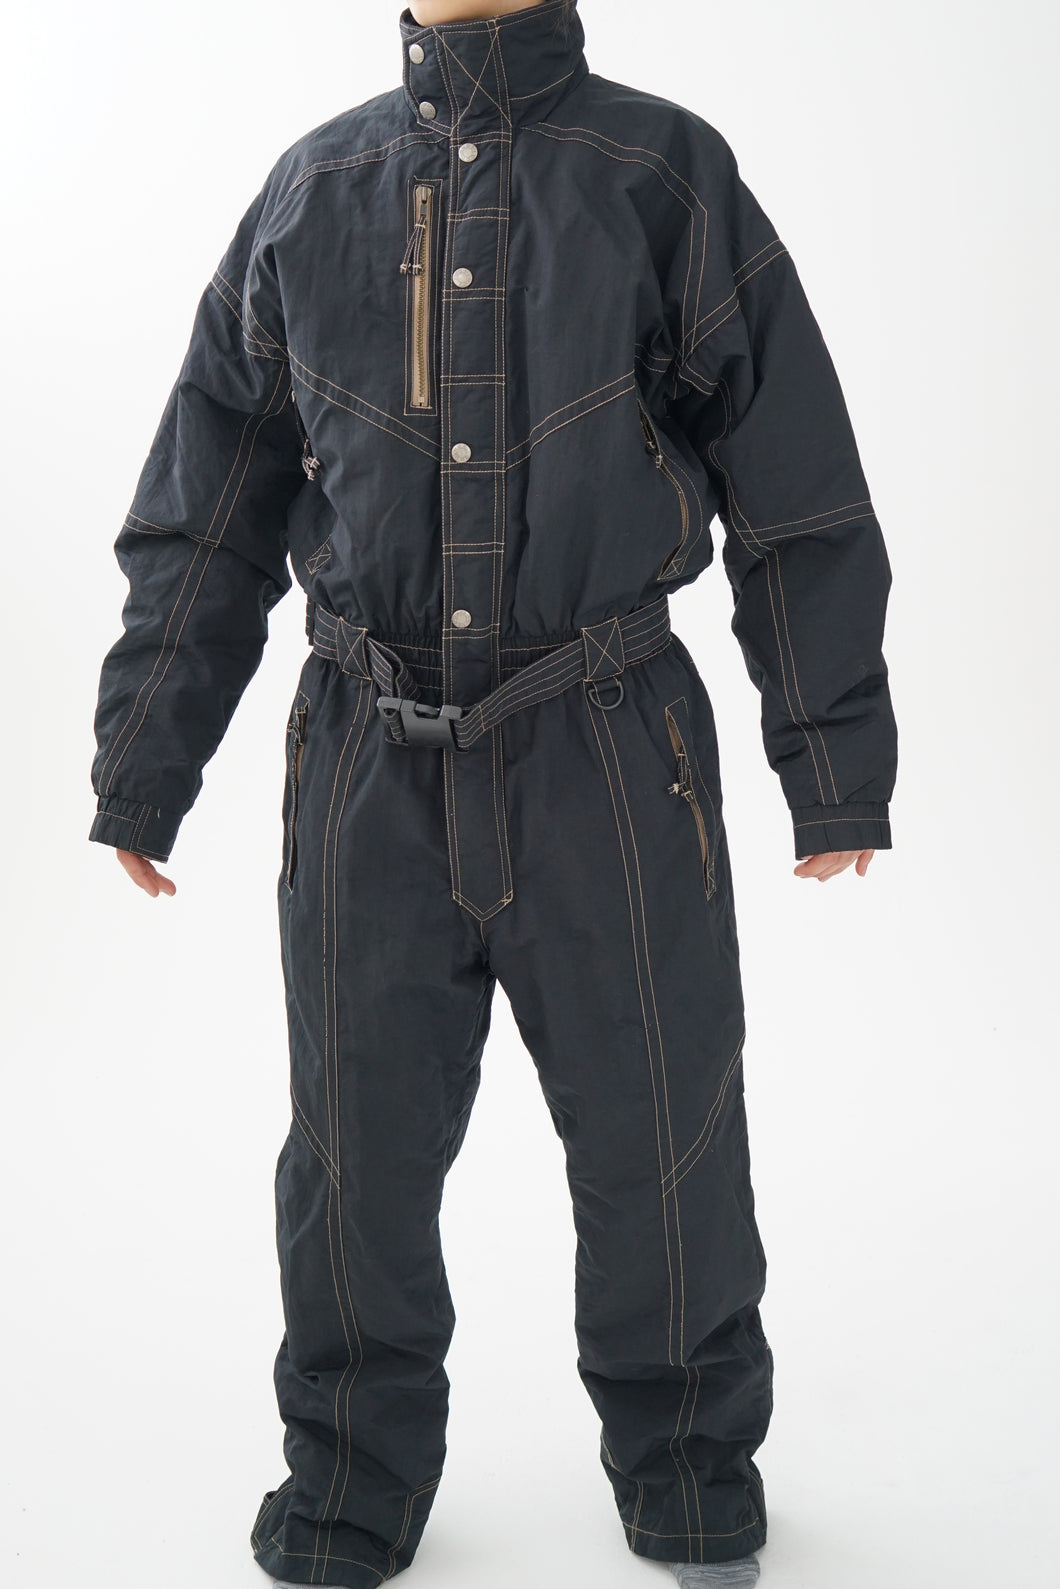 One piece vintage Look ski suit, snow suit pour homme taille 54 (XL)